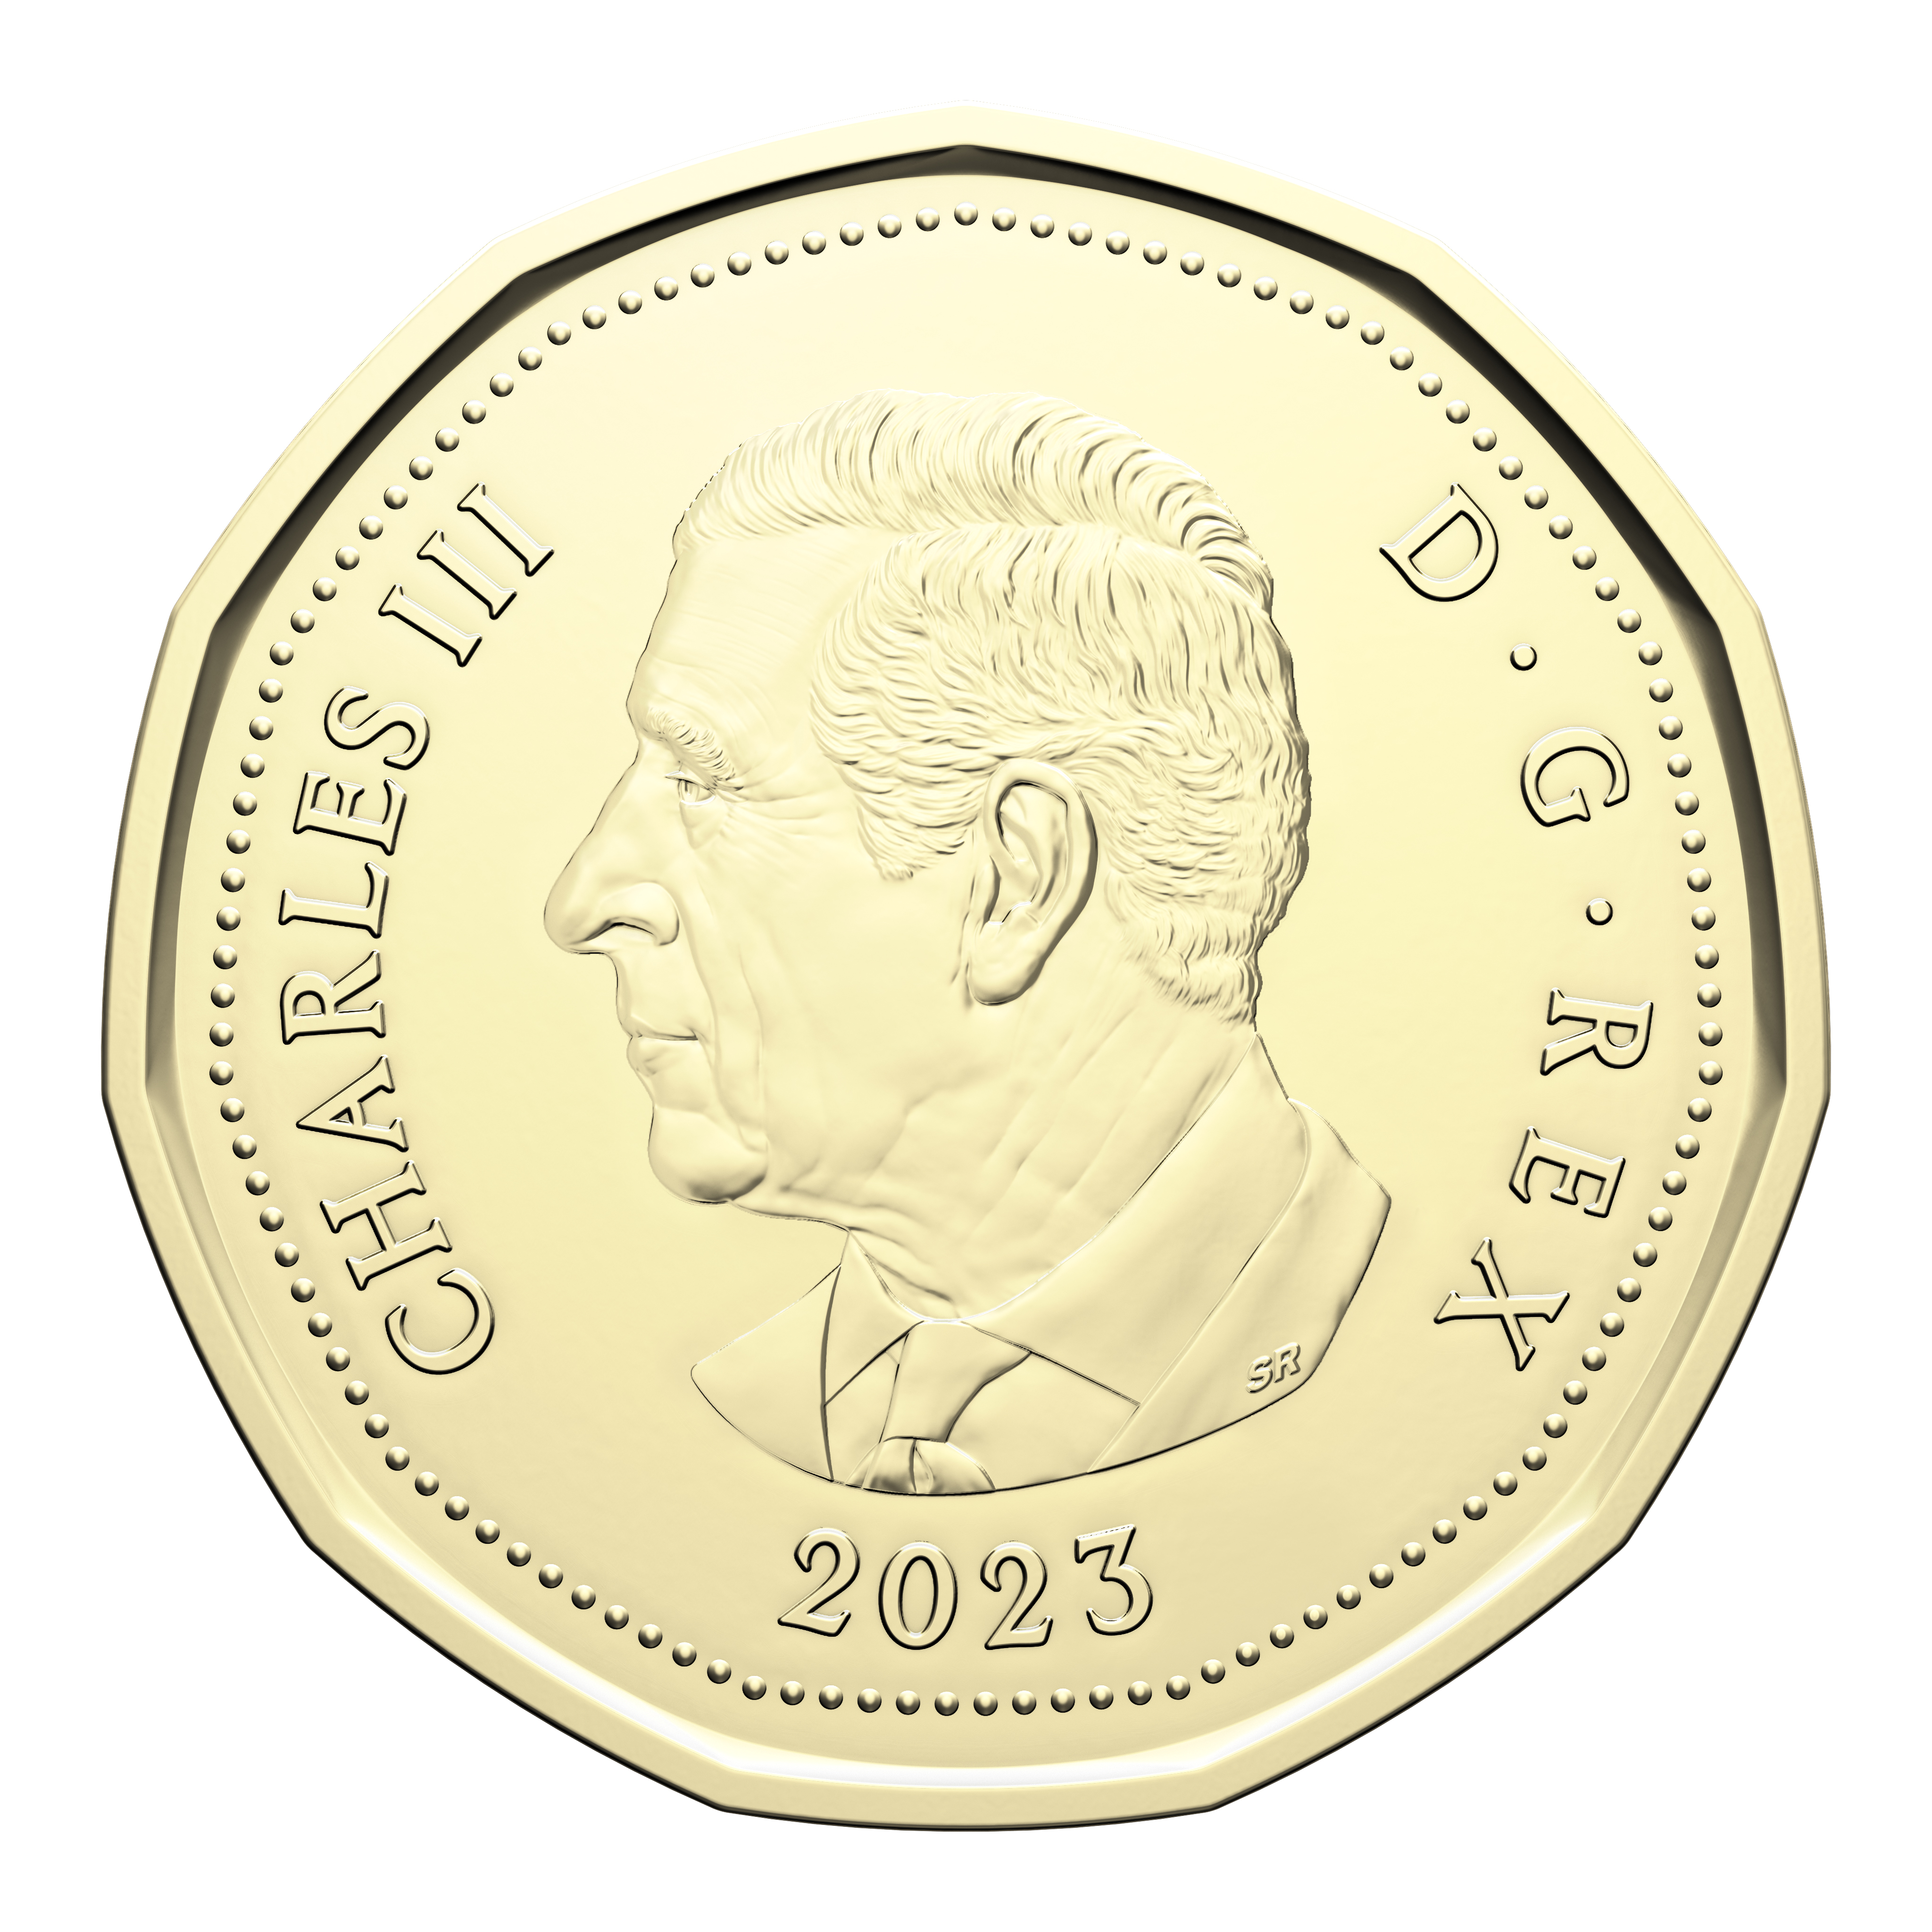 La Monnaie royale canadienne dévoile des pièces de monnaie à l'effigie du  roi Charles III